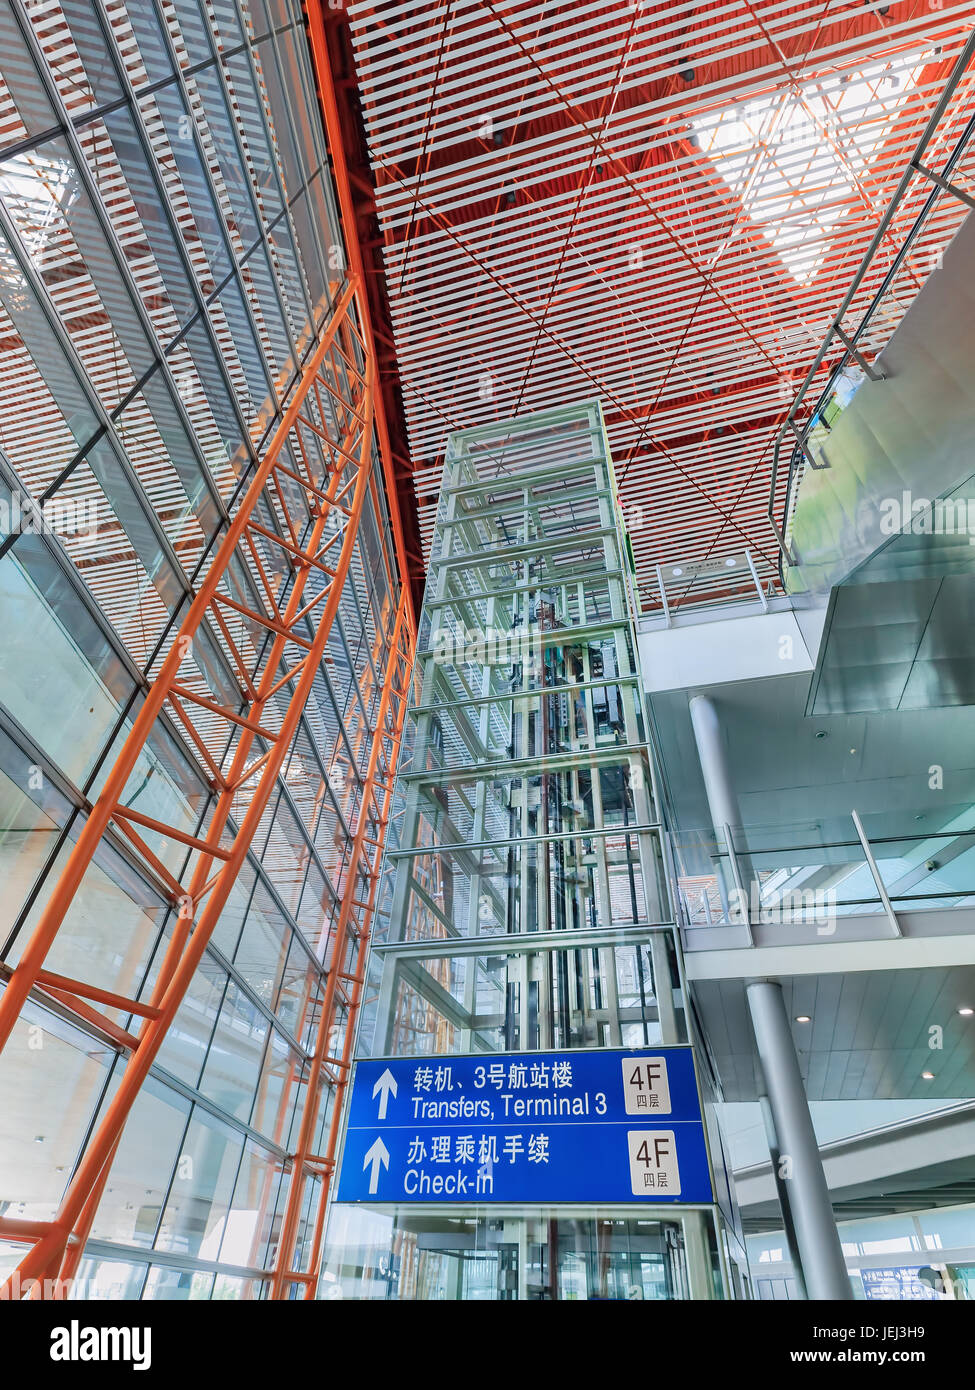 PECHINO-15 LUGLIO 2016. Telaio dell'ascensore coperto da pannelli di vetro, aeroporto internazionale di Pechino Capital, terminal 3. Foto Stock